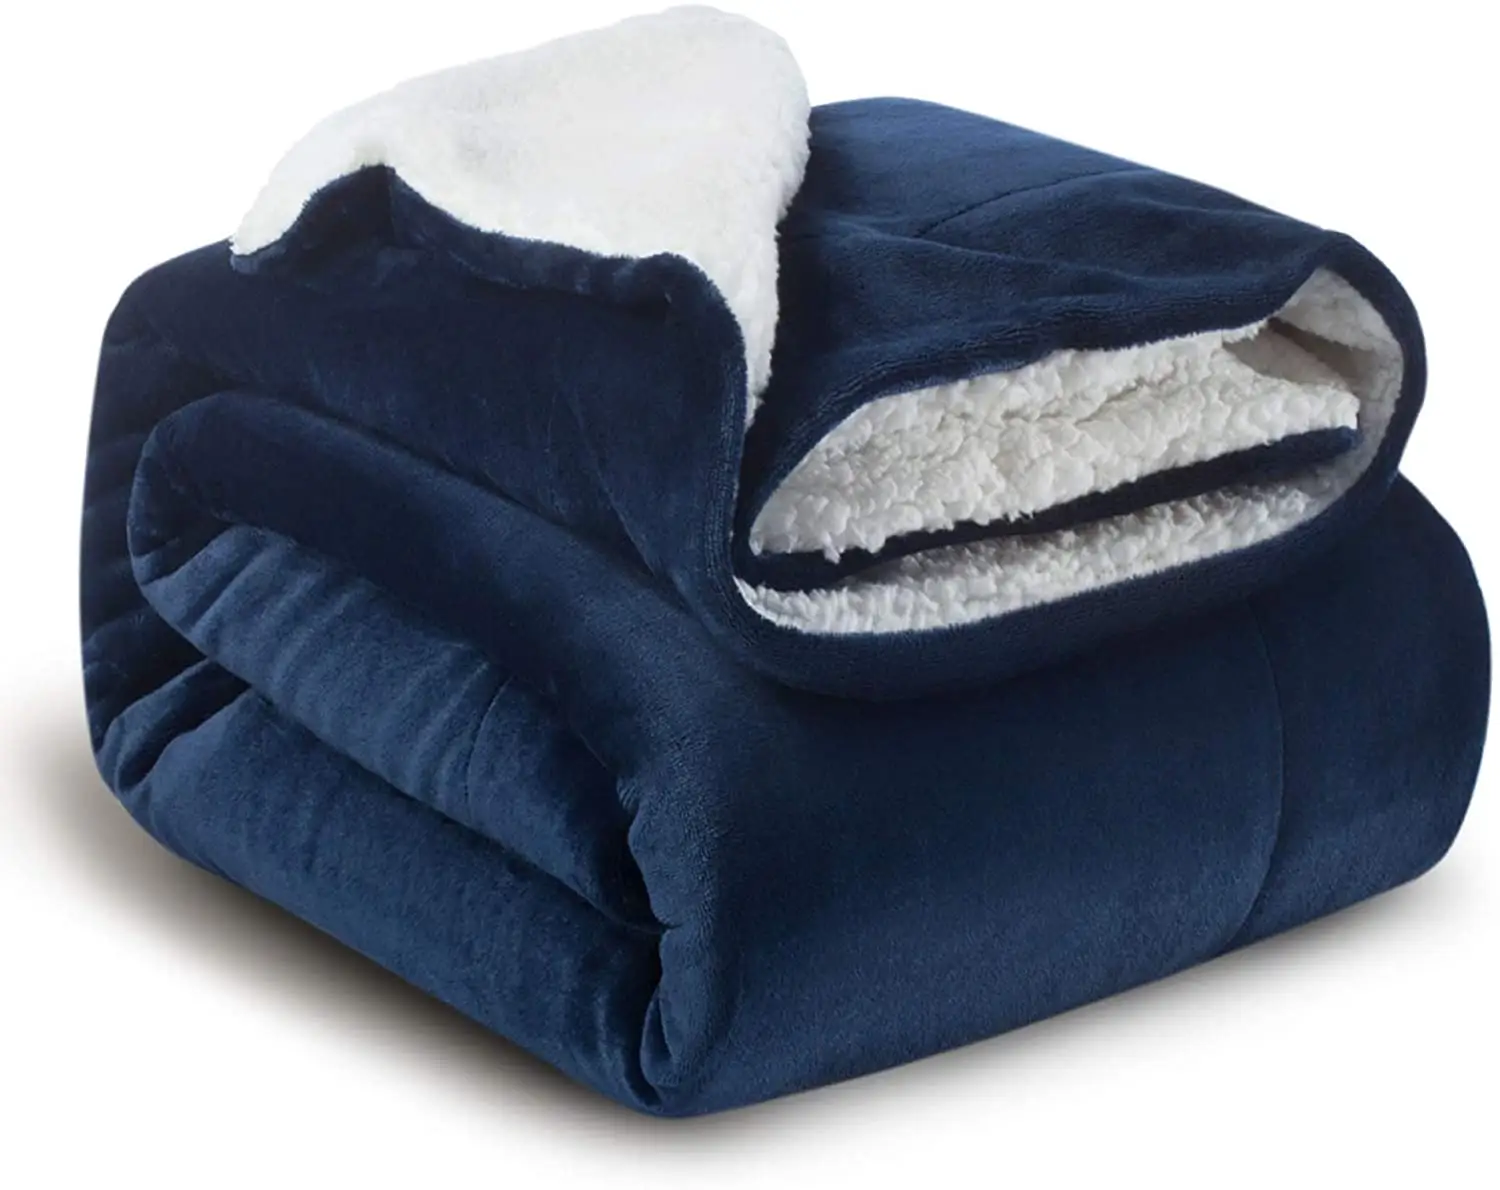 Vente chaude Meilleur vente sherpa doux couvertures en laine polaire pour enfants